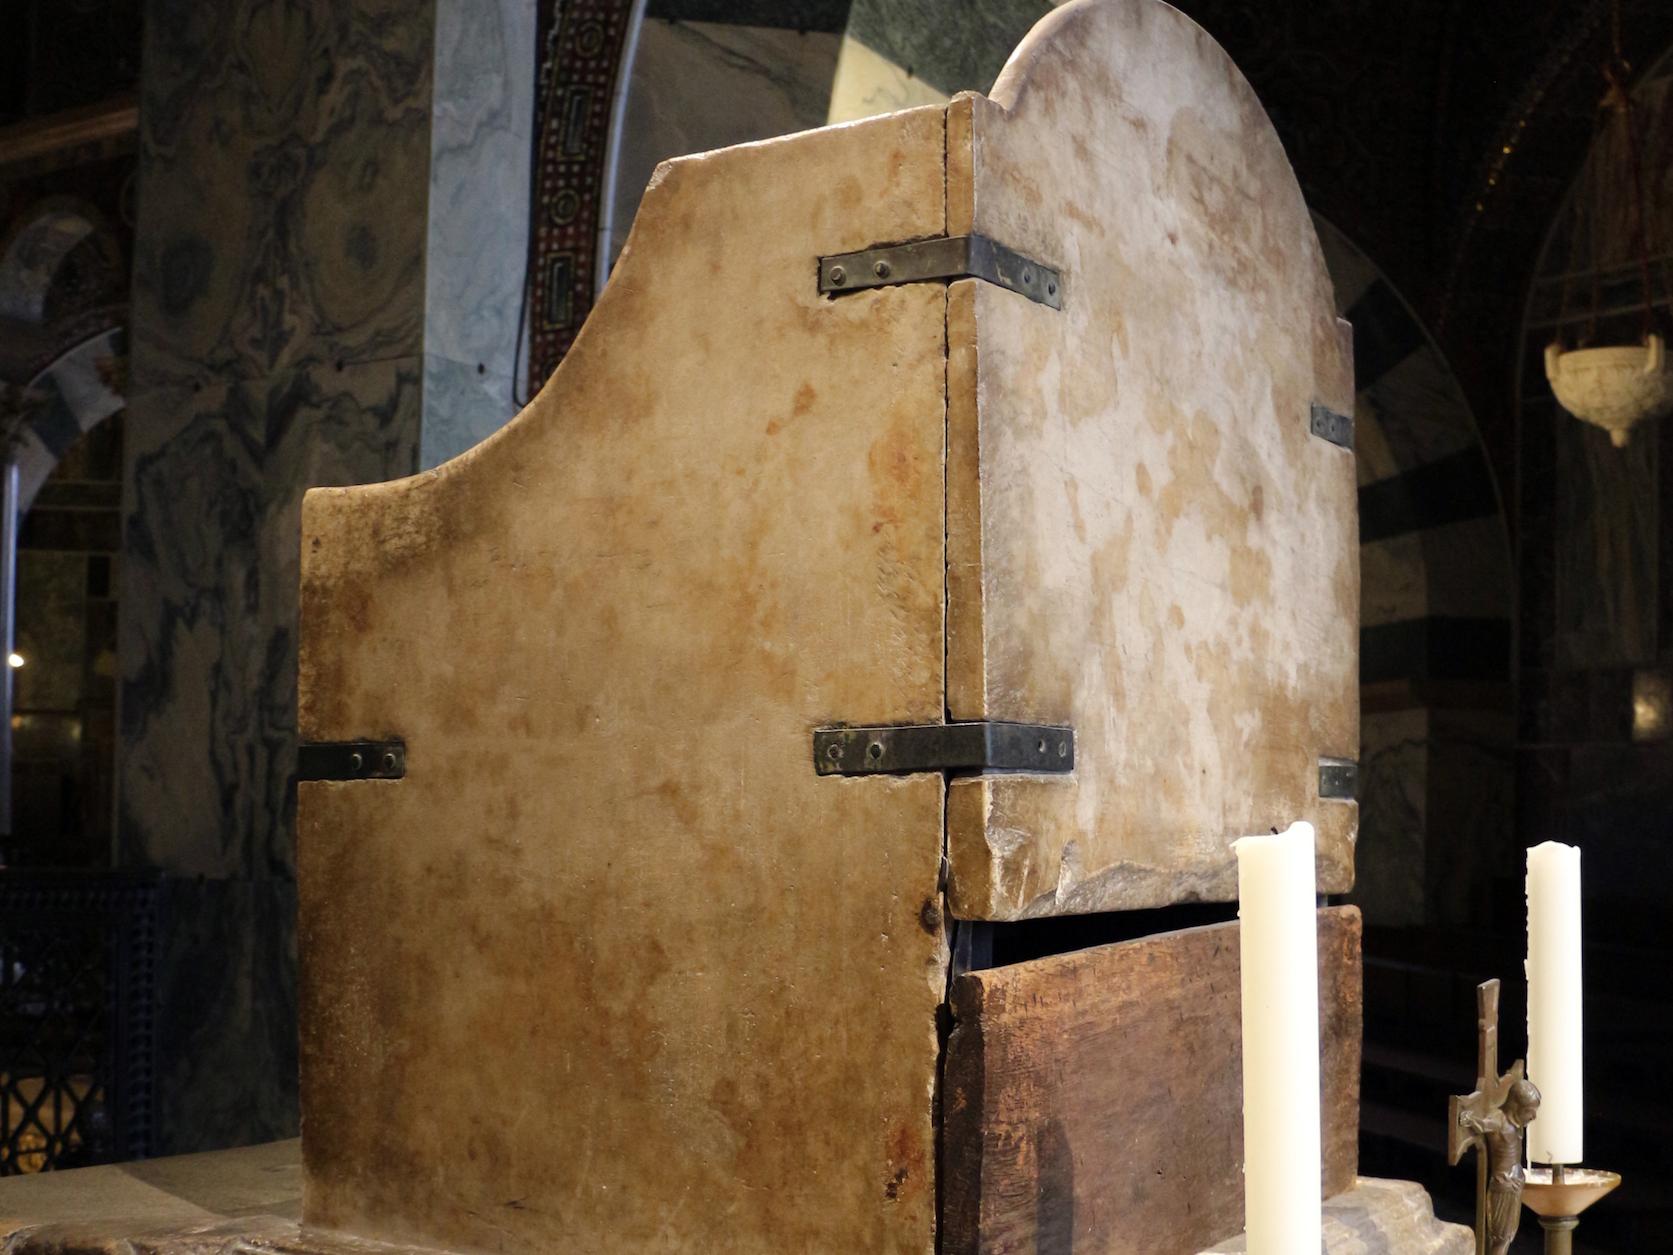 Sollte ein Königsthron nicht etwas mehr Prunk zeigen? Stattdessen zeichnen das Objekt im Aachener Dom grob zugehauener Marmor, schlecht verarbeitete Klammern und schlichte Hölzer aus.